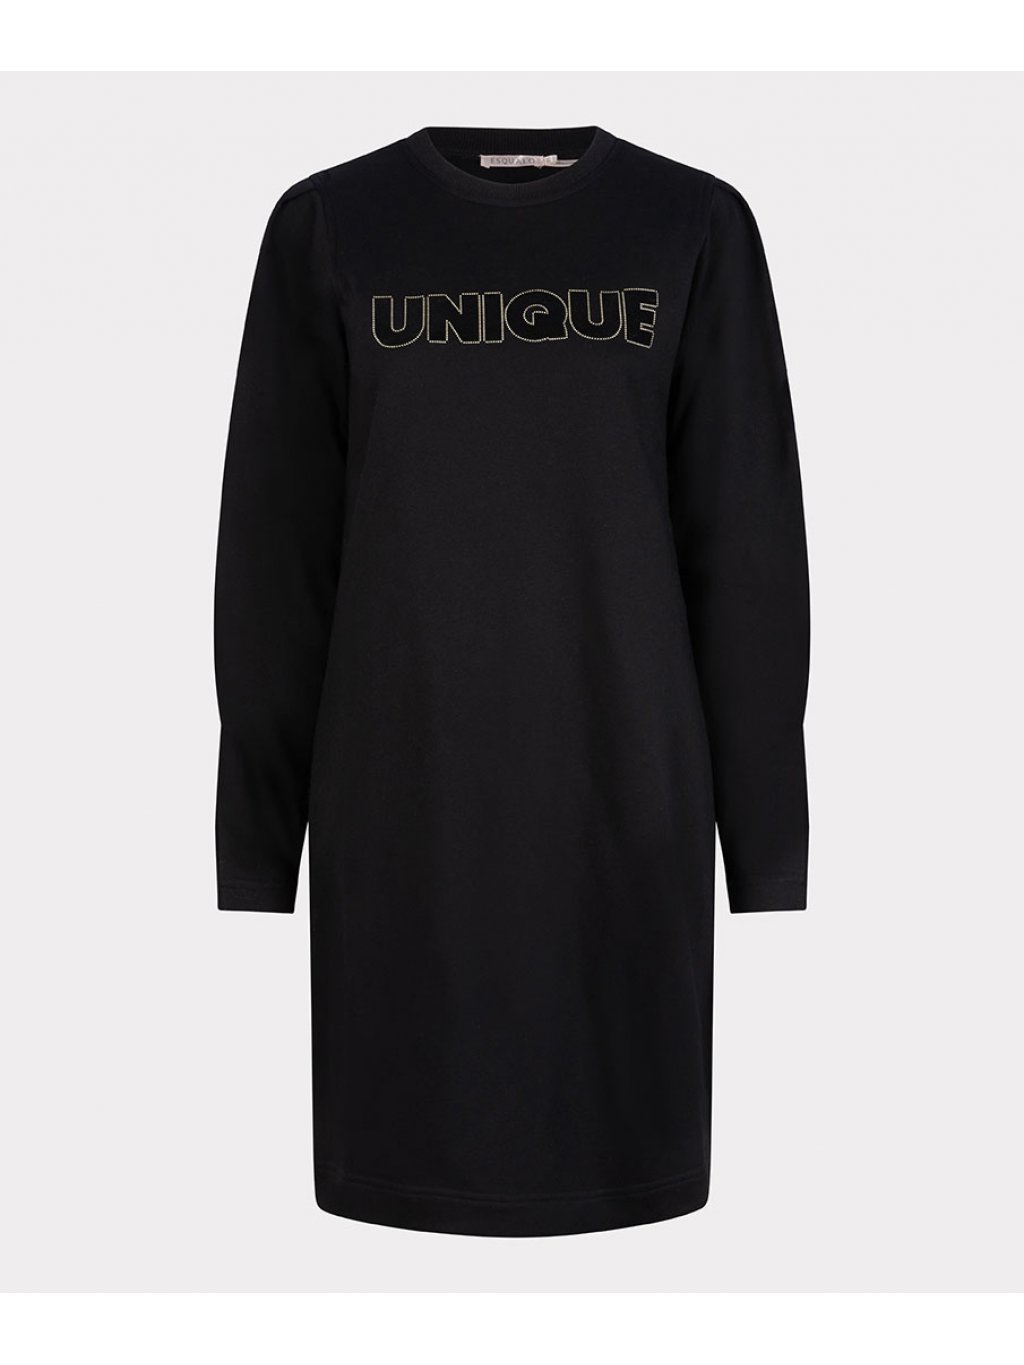 Šaty Esqualo 5713 černé s nápisem a zajímavým rukávem